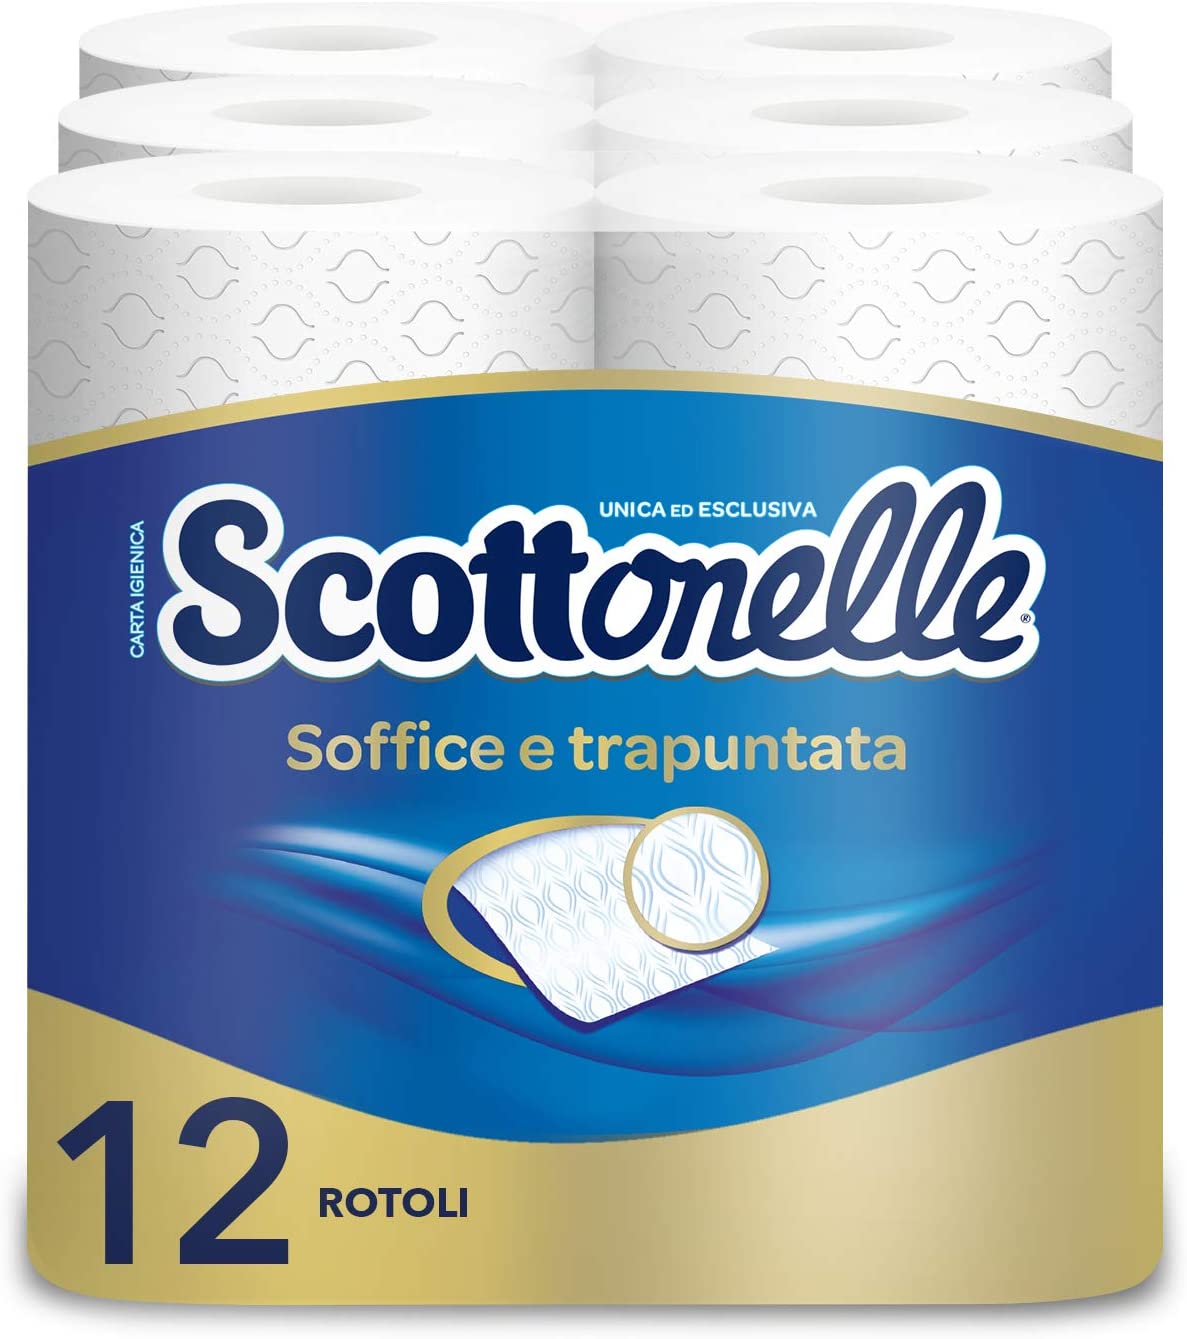 Scottonelle Carta Igienica Soffice e Trapuntata Set da 12 Rotoli Bagno.